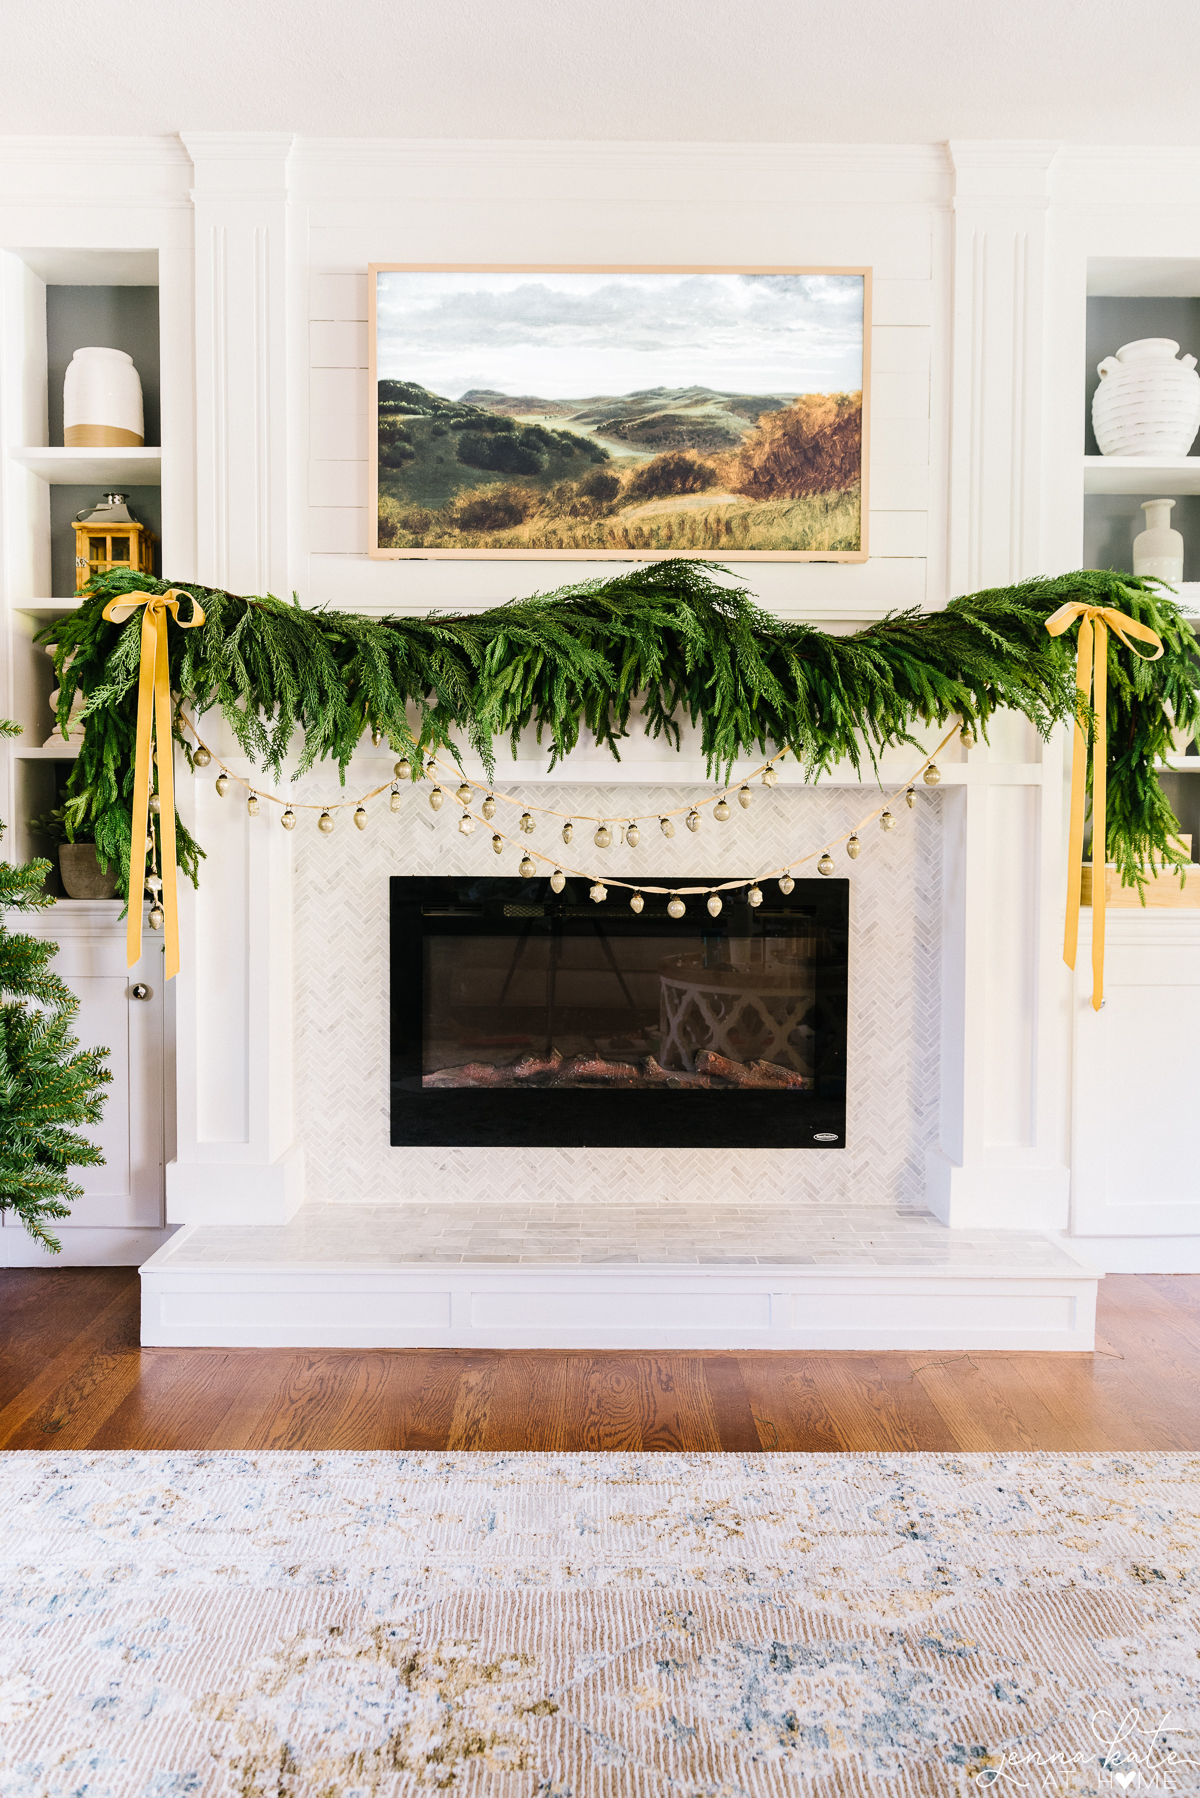 How to Hang Christmas Garland on a Mantel